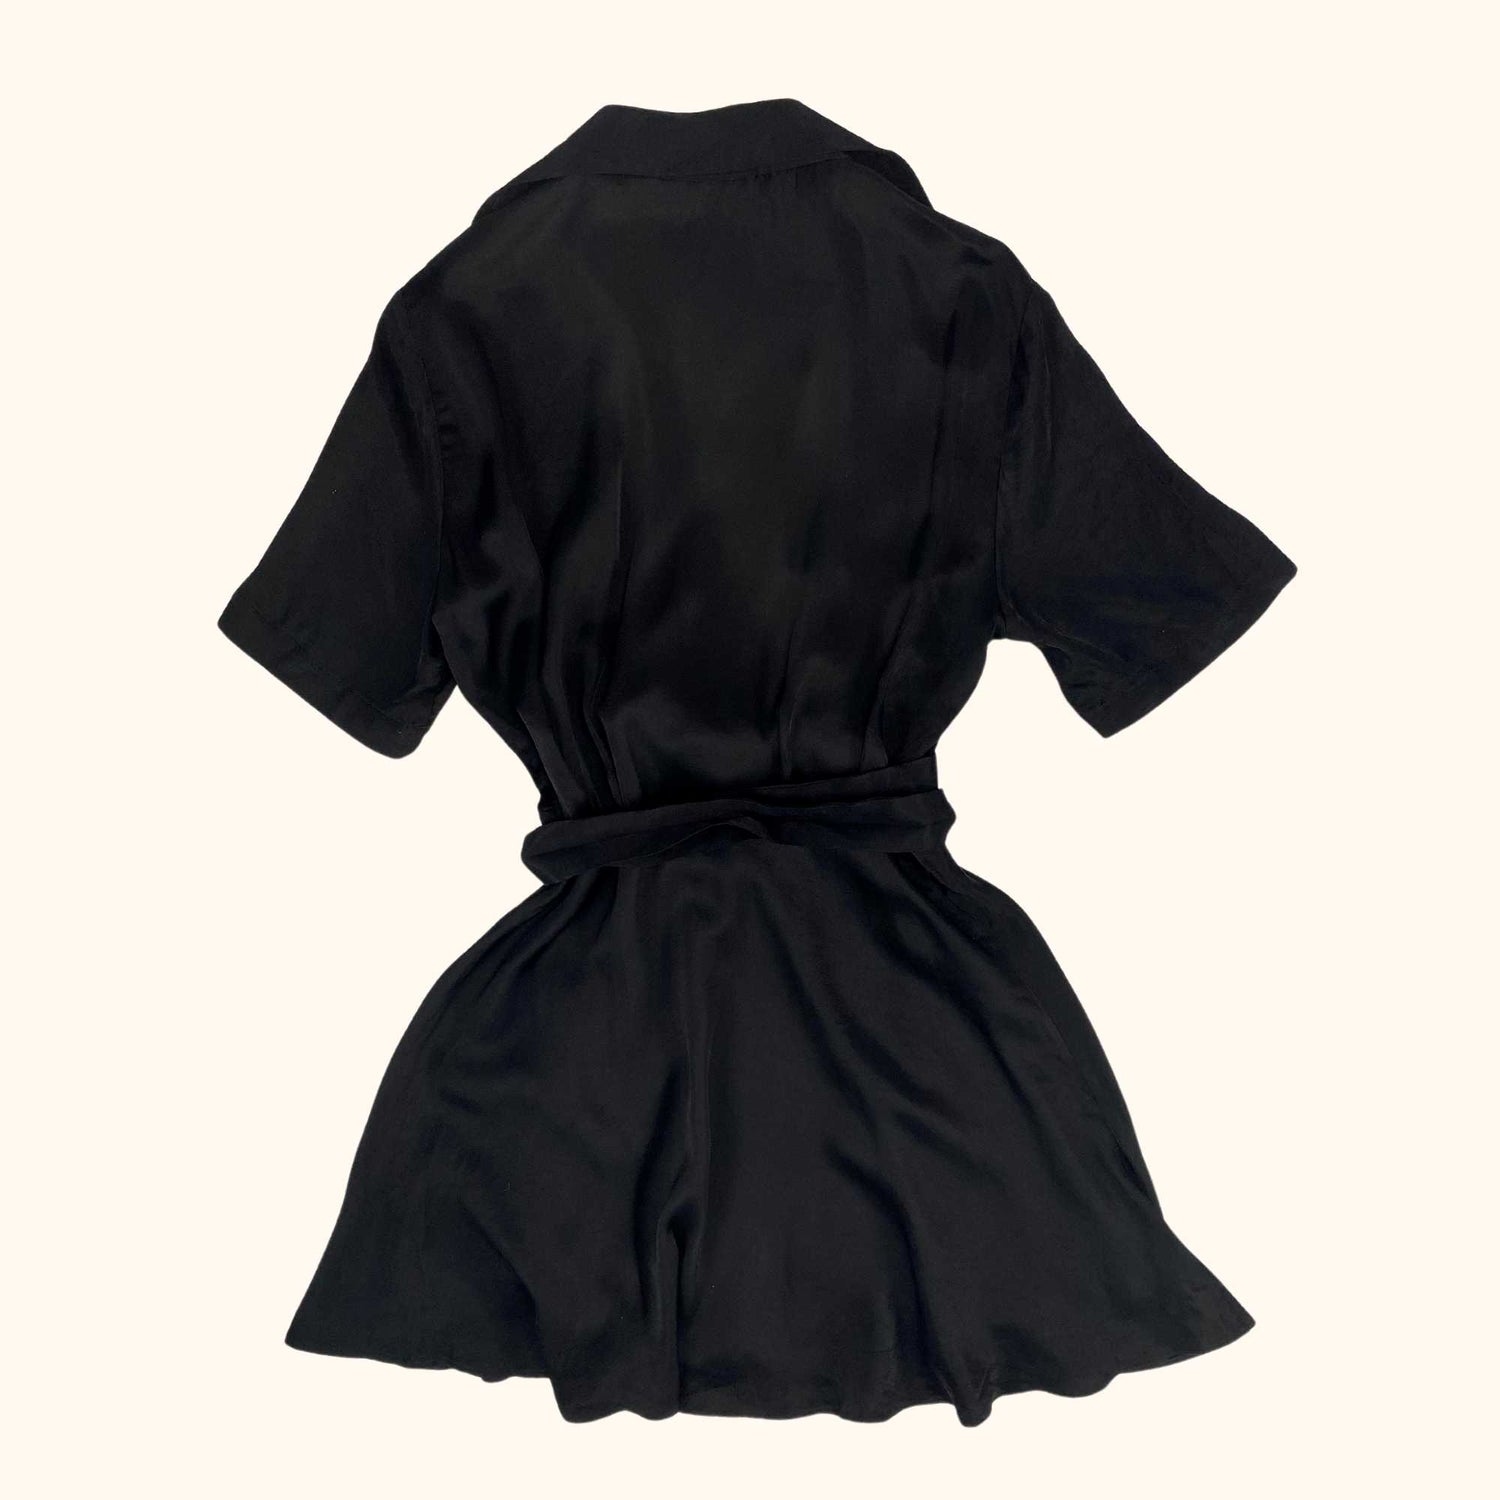 Zara Satin Wrap Around Black Dress - Size Small - Zara - Dresses